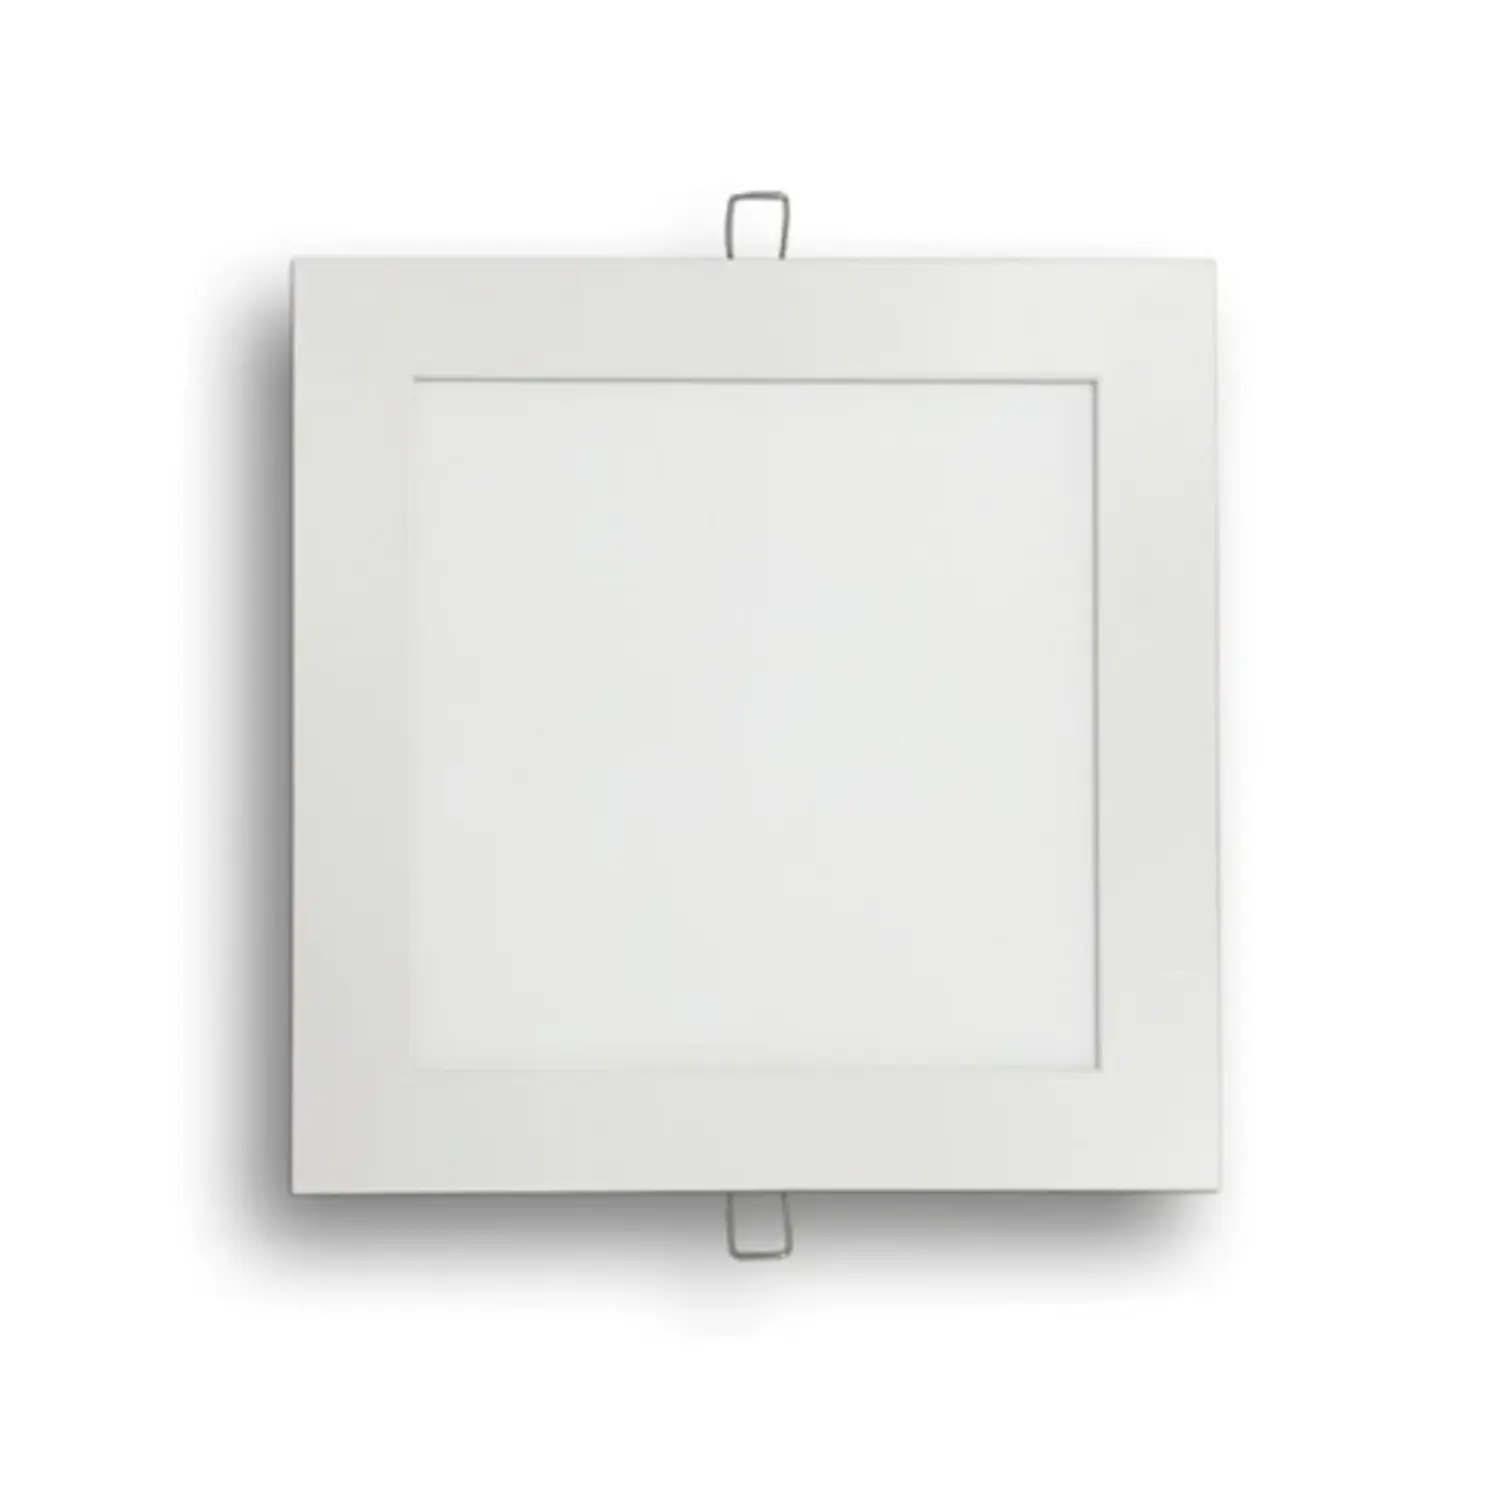 immagine del prodotto pannello led slim faretto incasso 6 watt bianco naturale quadrato